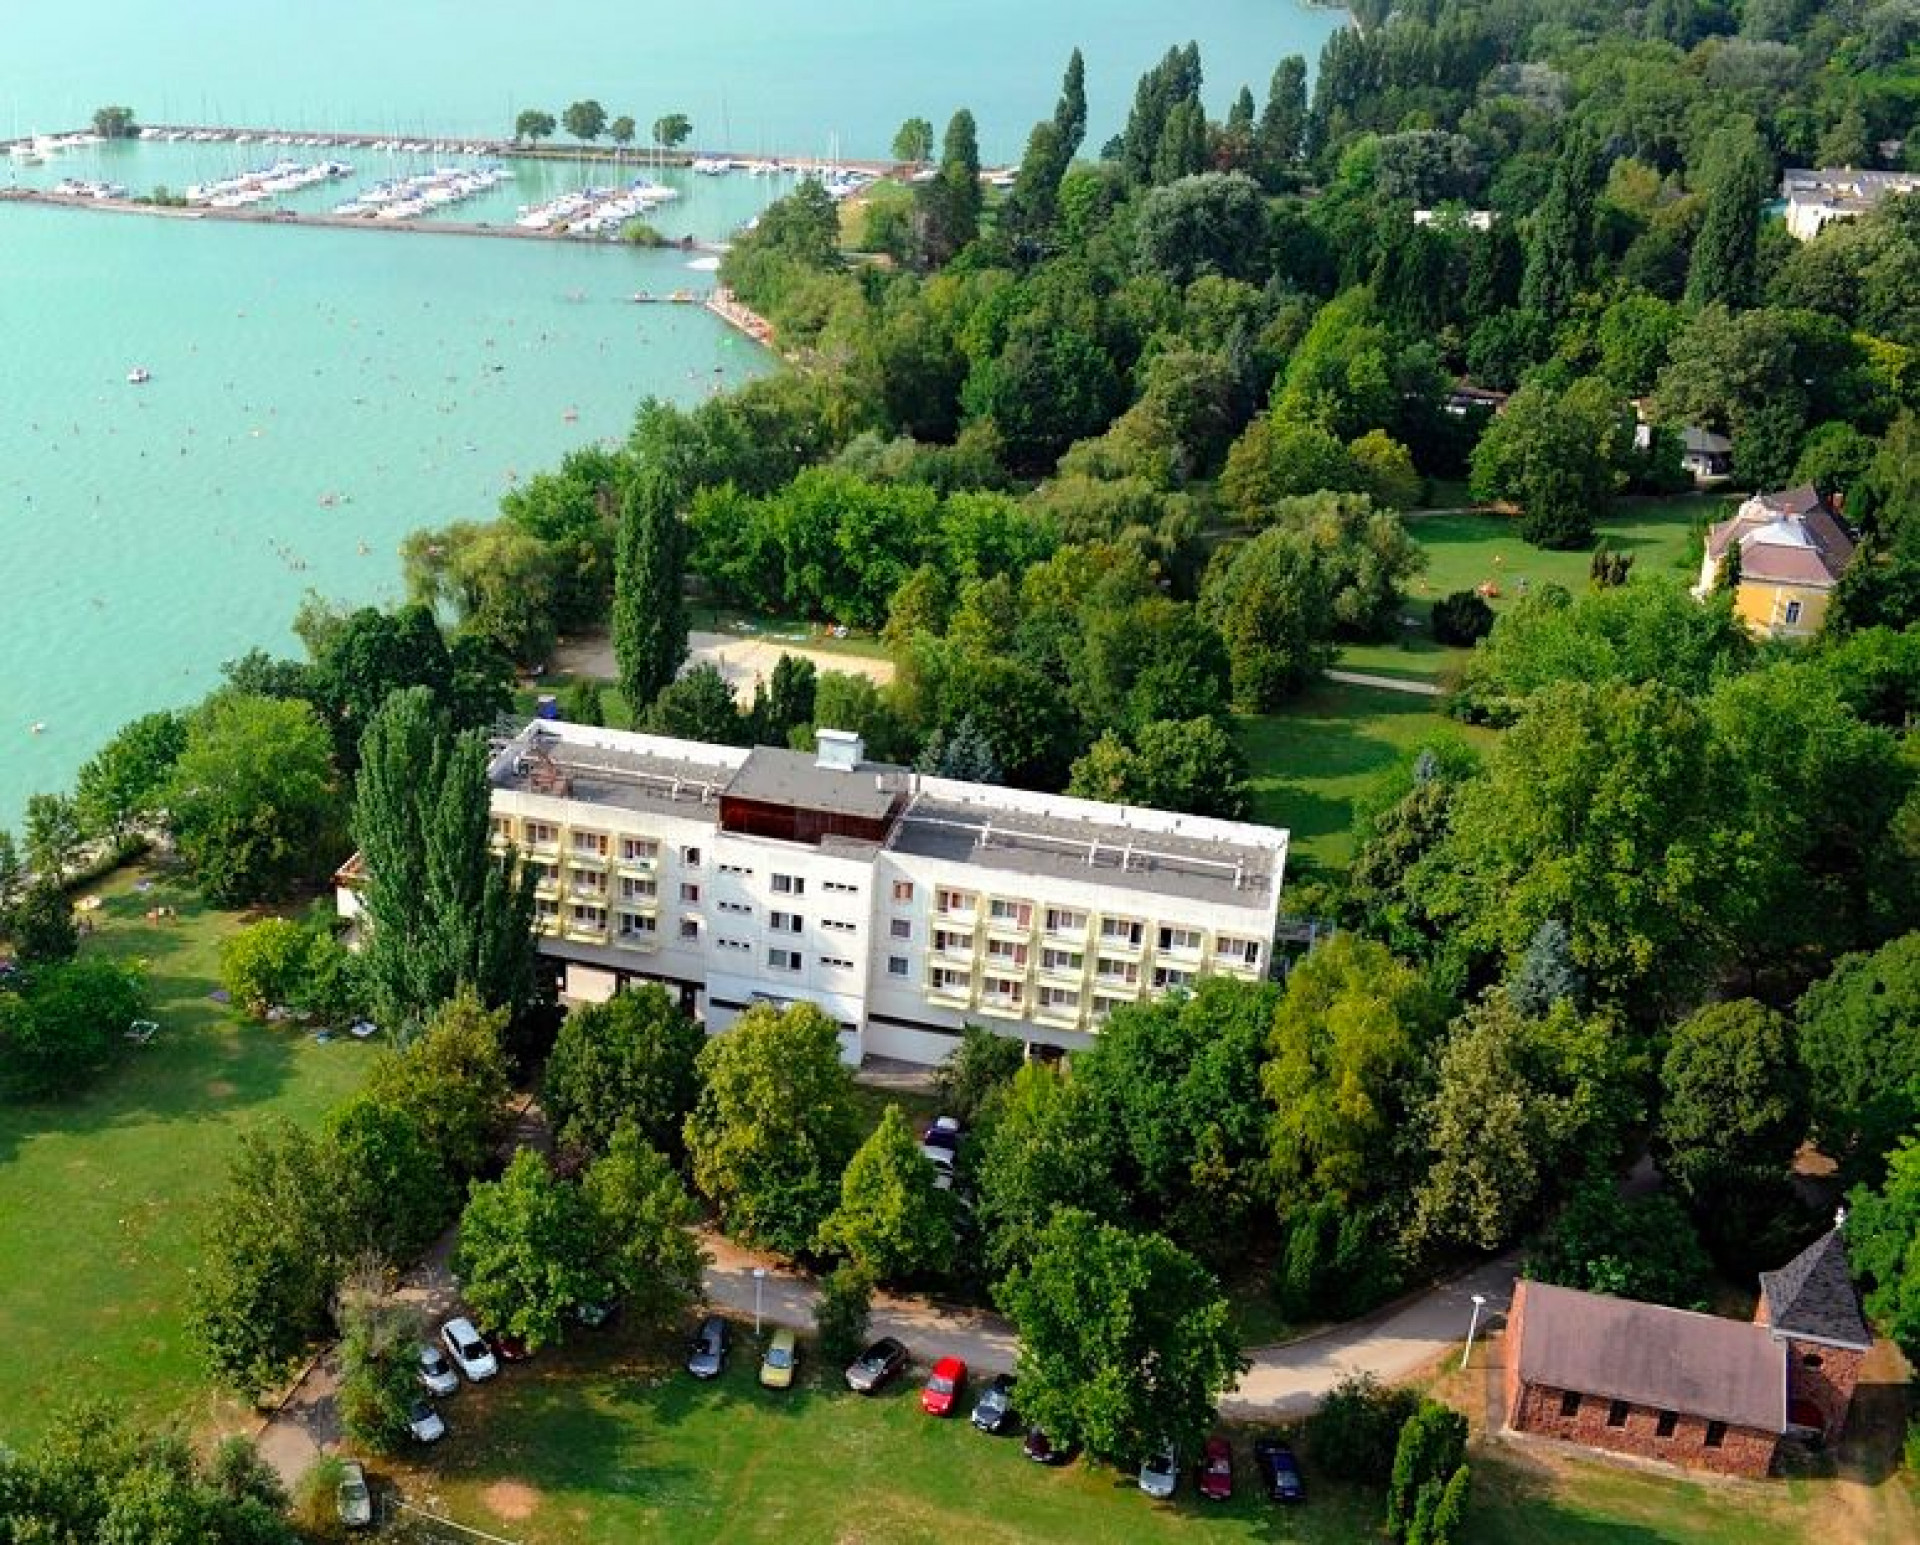 Úgy tűnik mégis megépülhet a korábban tervezett vízisport park Balatonvilágoson